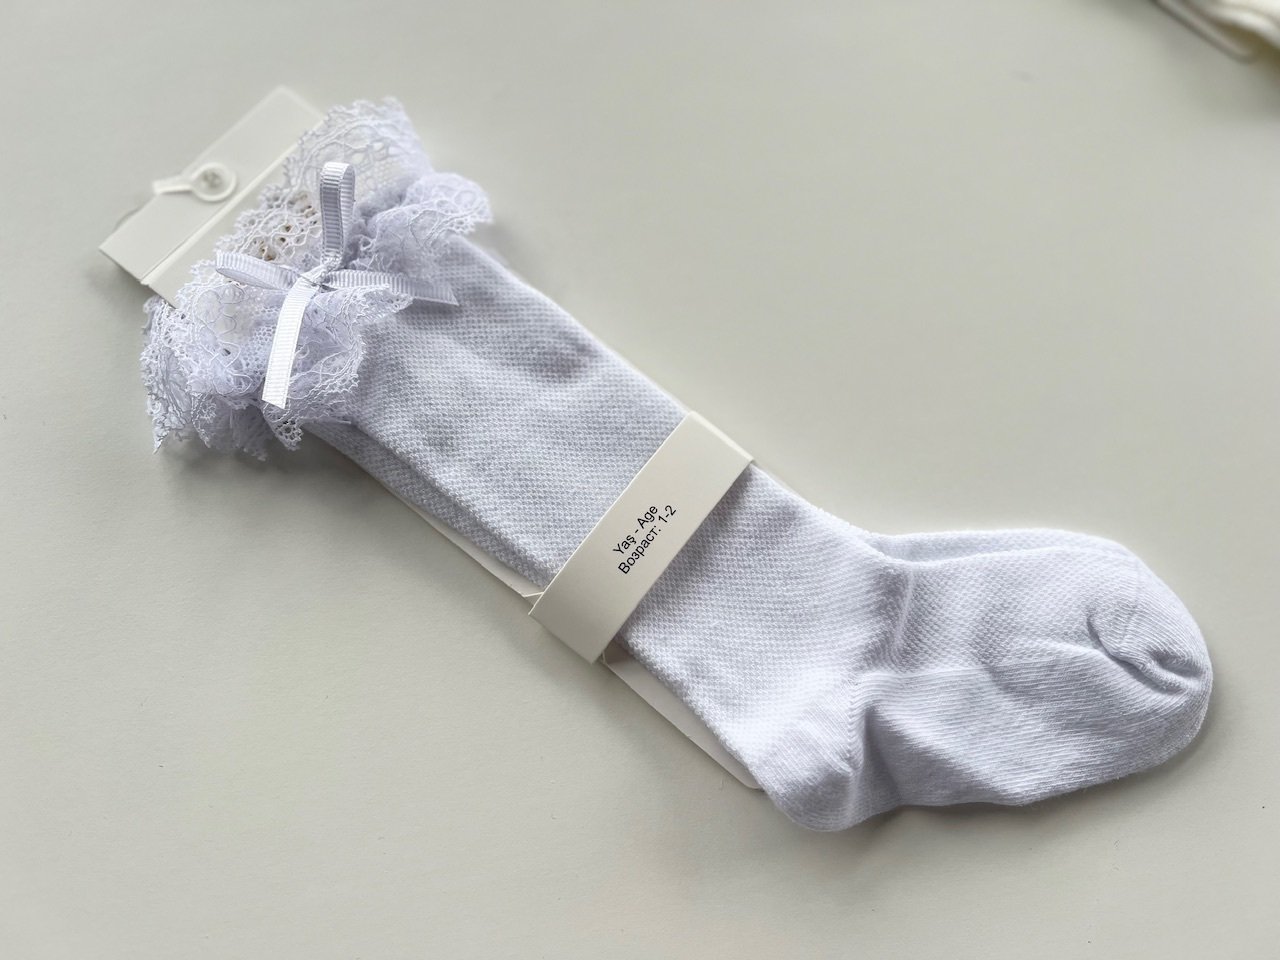 Ilgos baltos kojinės su nėriniu